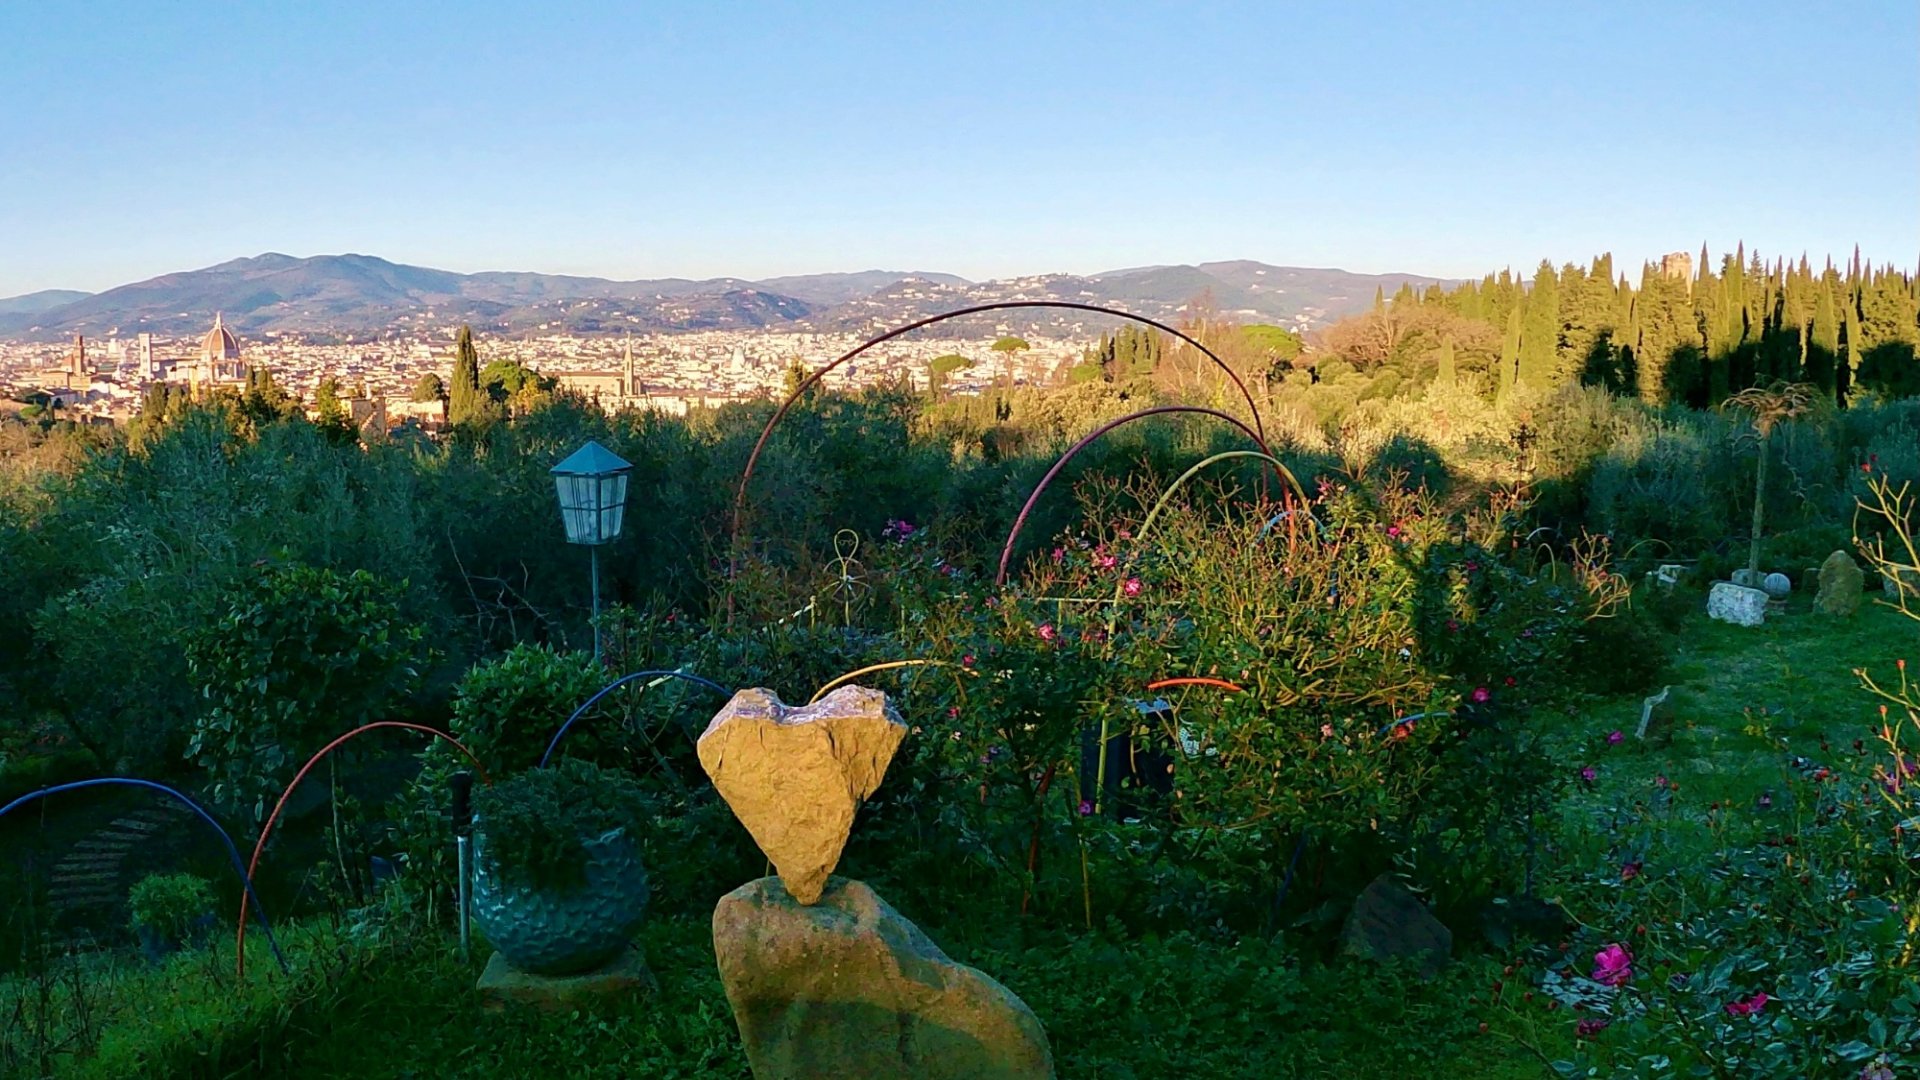 Passeggiata emozionale alla scoperta del Giardino delle Meraviglie sulla collina di Firenze